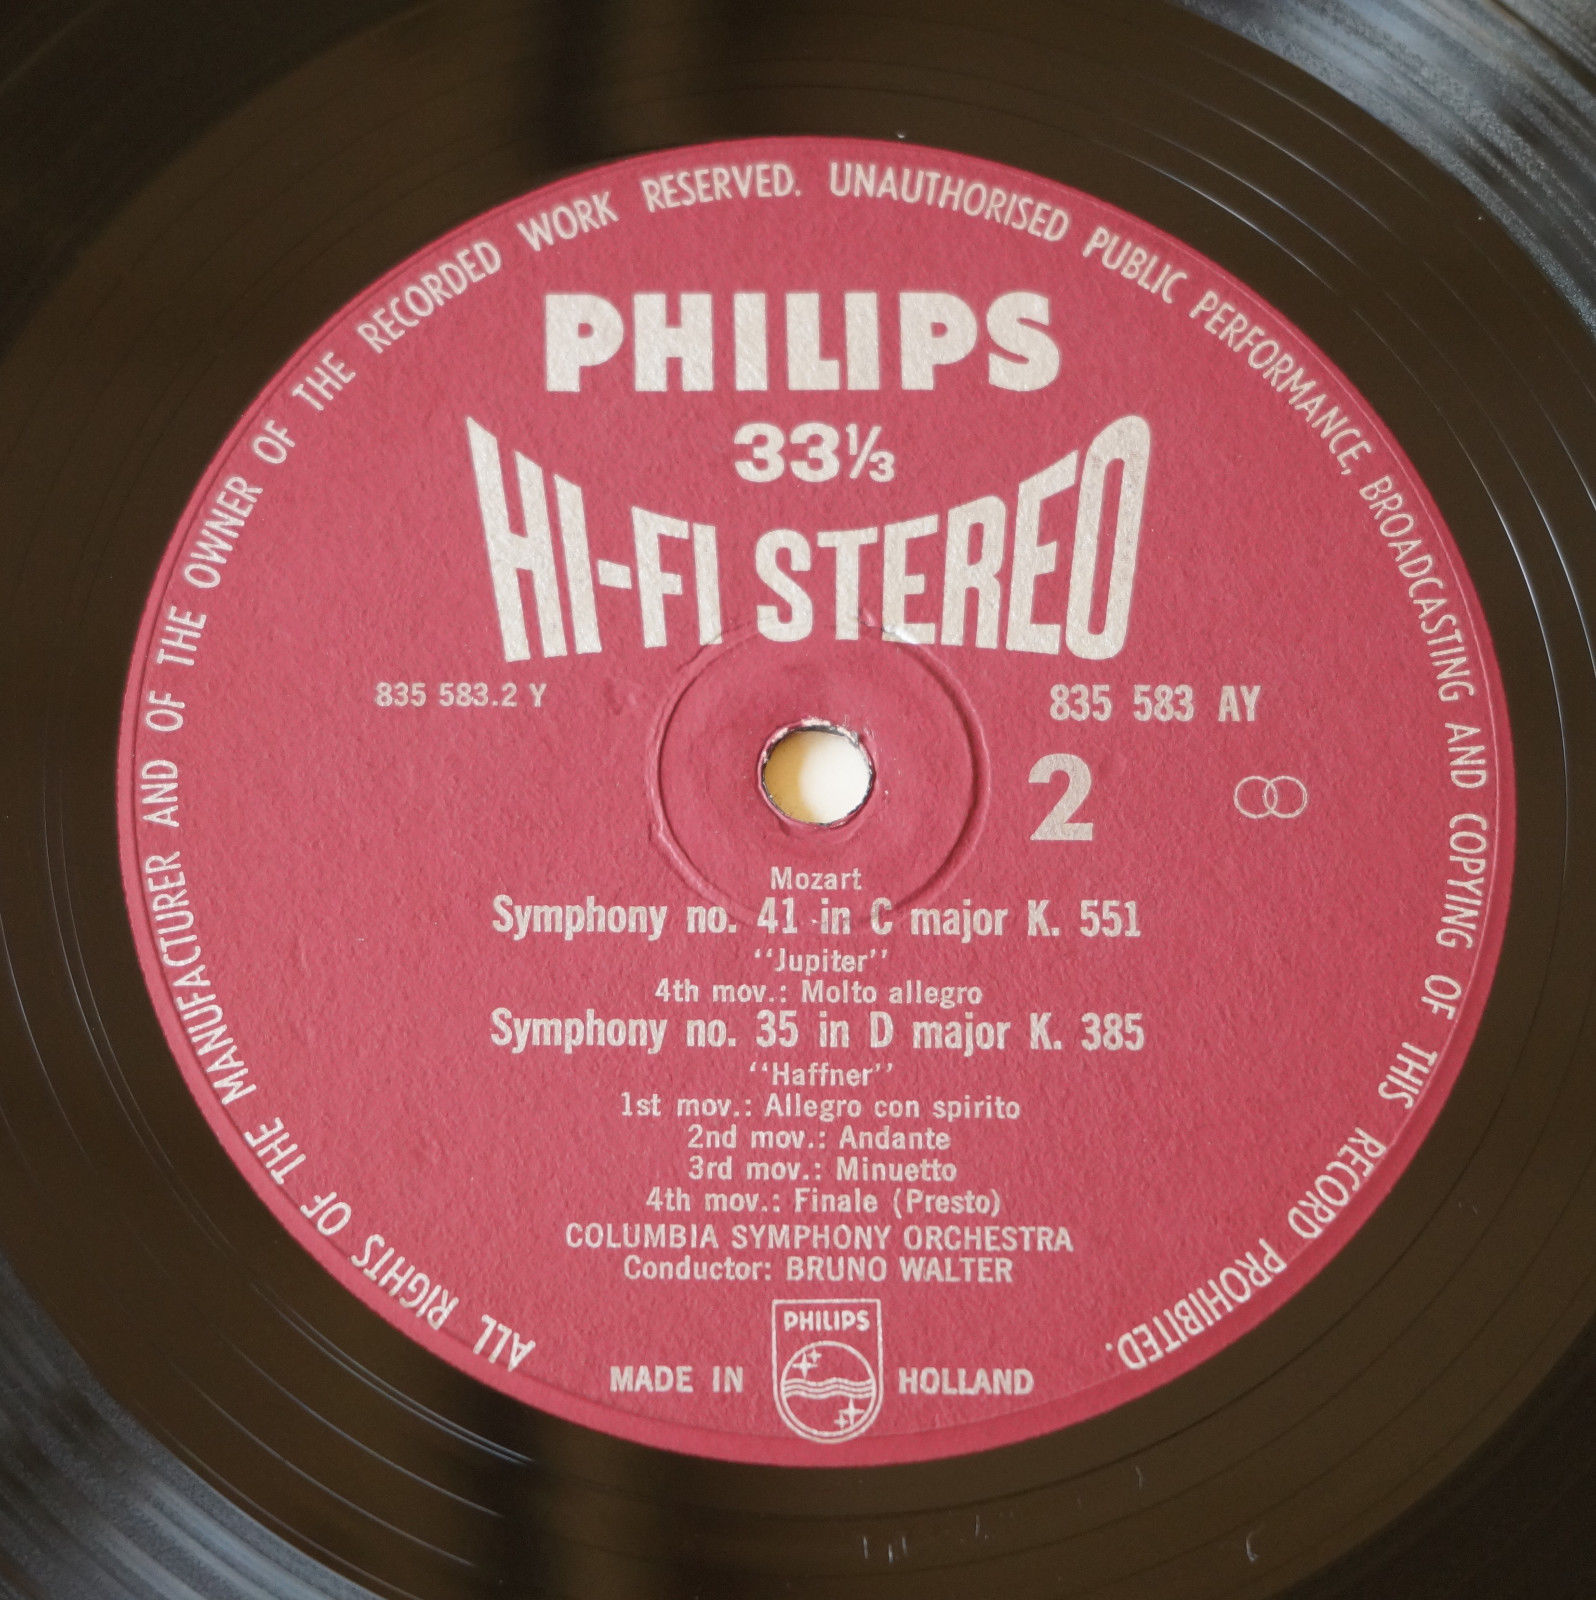 Bruno Walter - Mozart "Jupiter" 1962 *HI-FI STEREO* 12" LP Philips ?– 835 583 AY